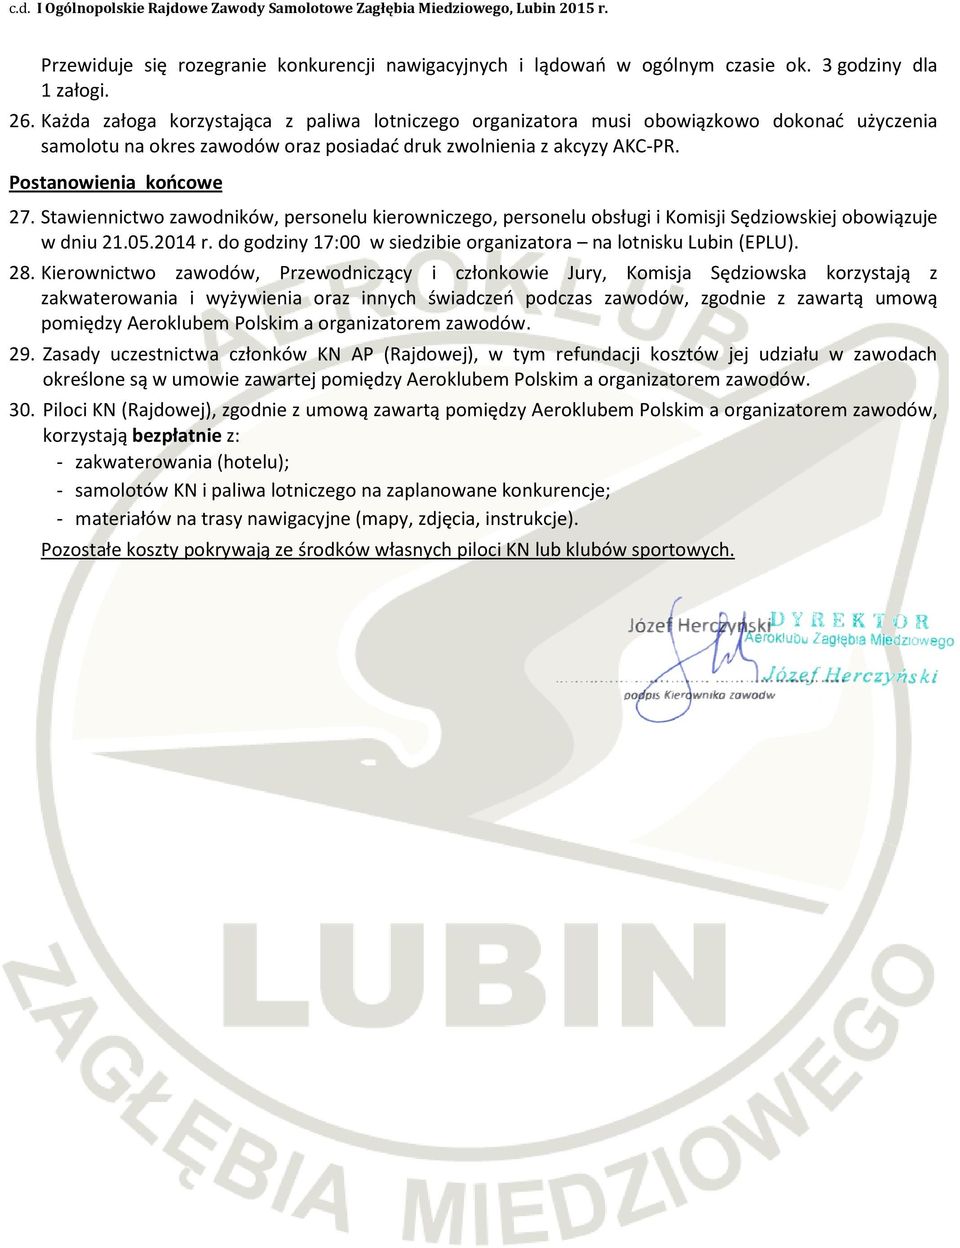 Stawiennictwo zawodników, personelu kierowniczego, personelu obsługi i Komisji Sędziowskiej obowiązuje w dniu 21.05.2014 r. do godziny 17:00 w siedzibie organizatora na lotnisku Lubin (EPLU). 28.